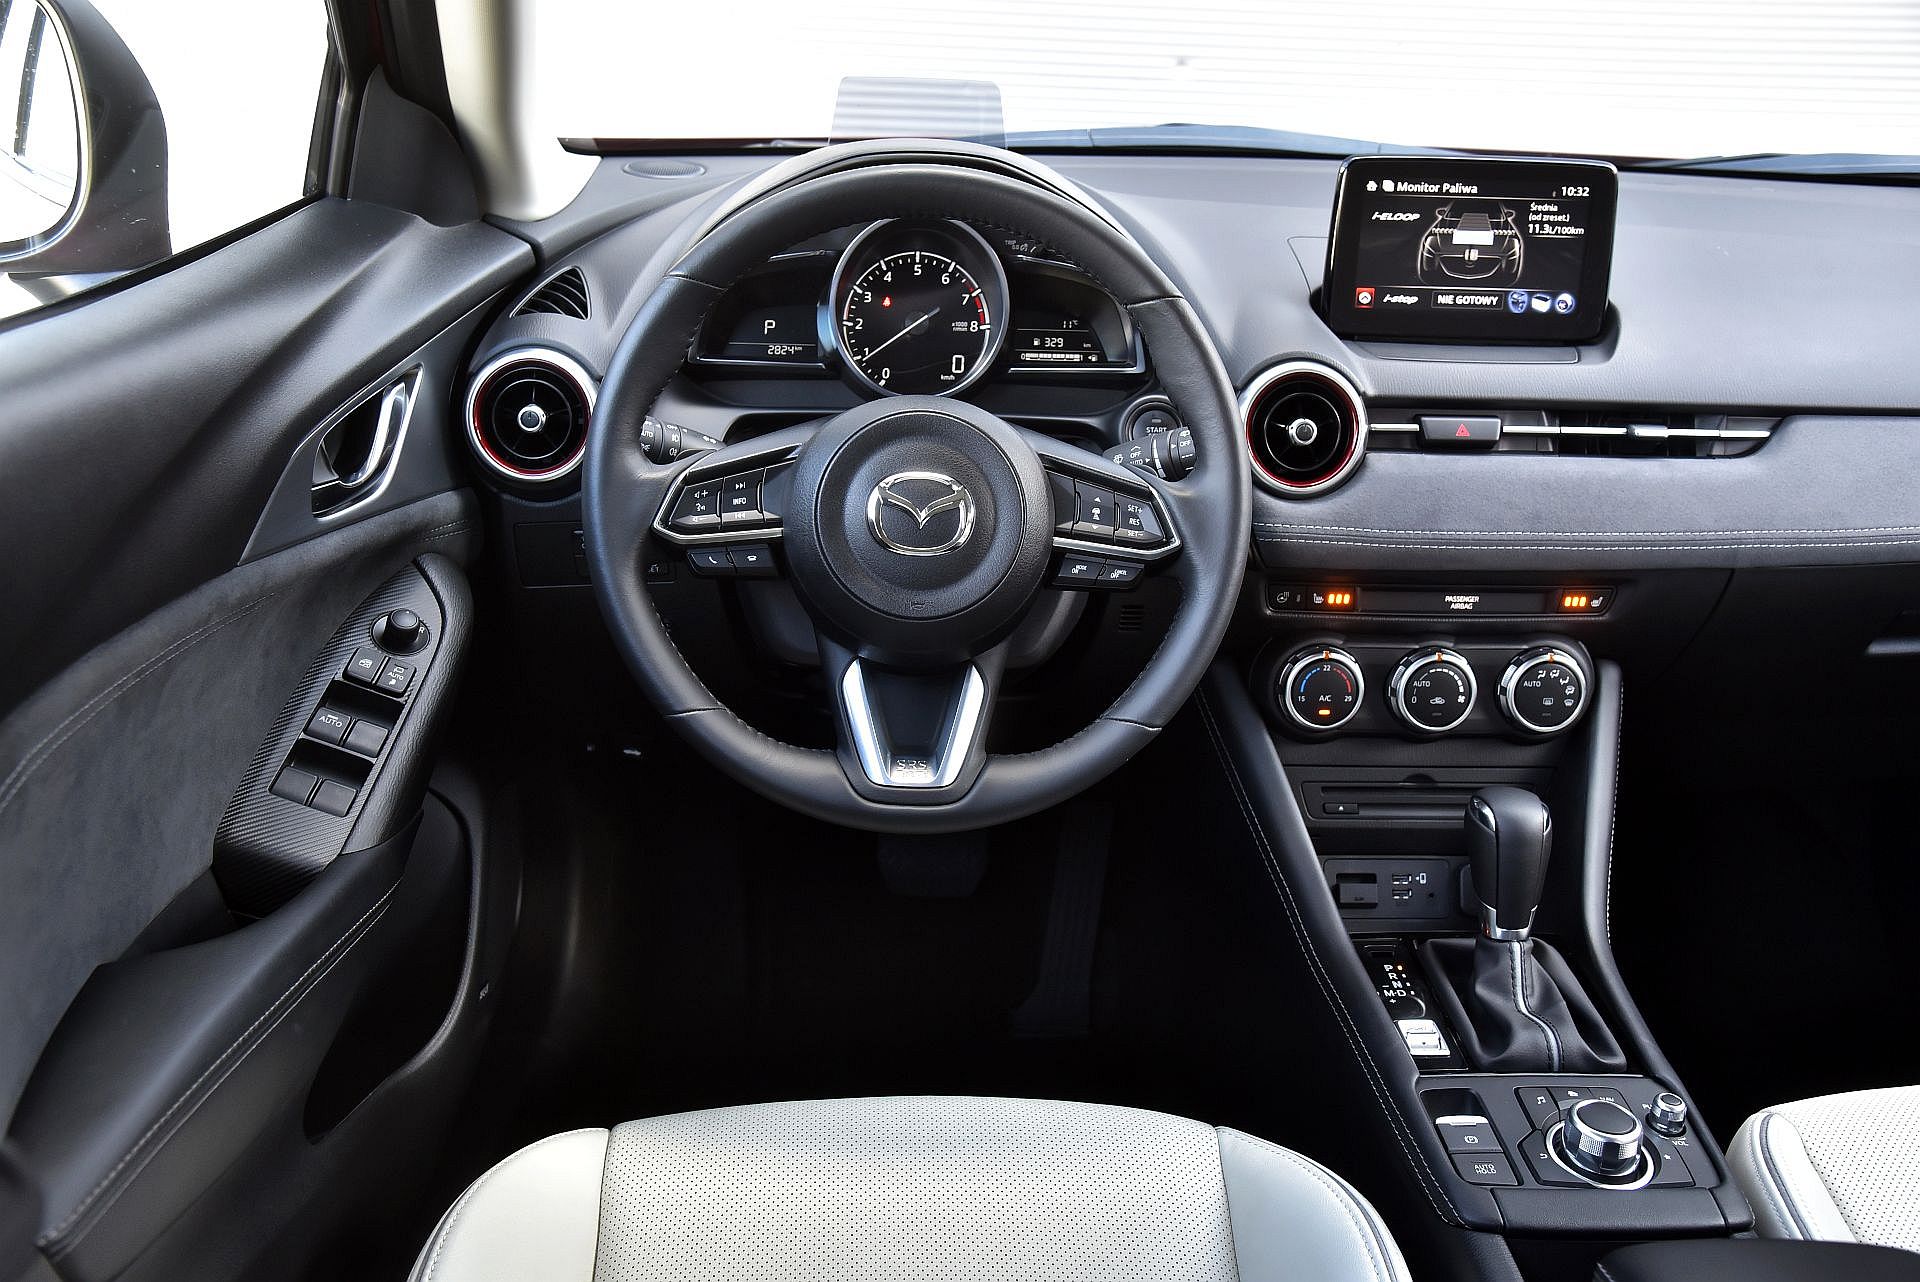 Używana Mazda Cx-3 (Od 2015 R.) - Opinie, Dane Techniczne, Typowe Usterki